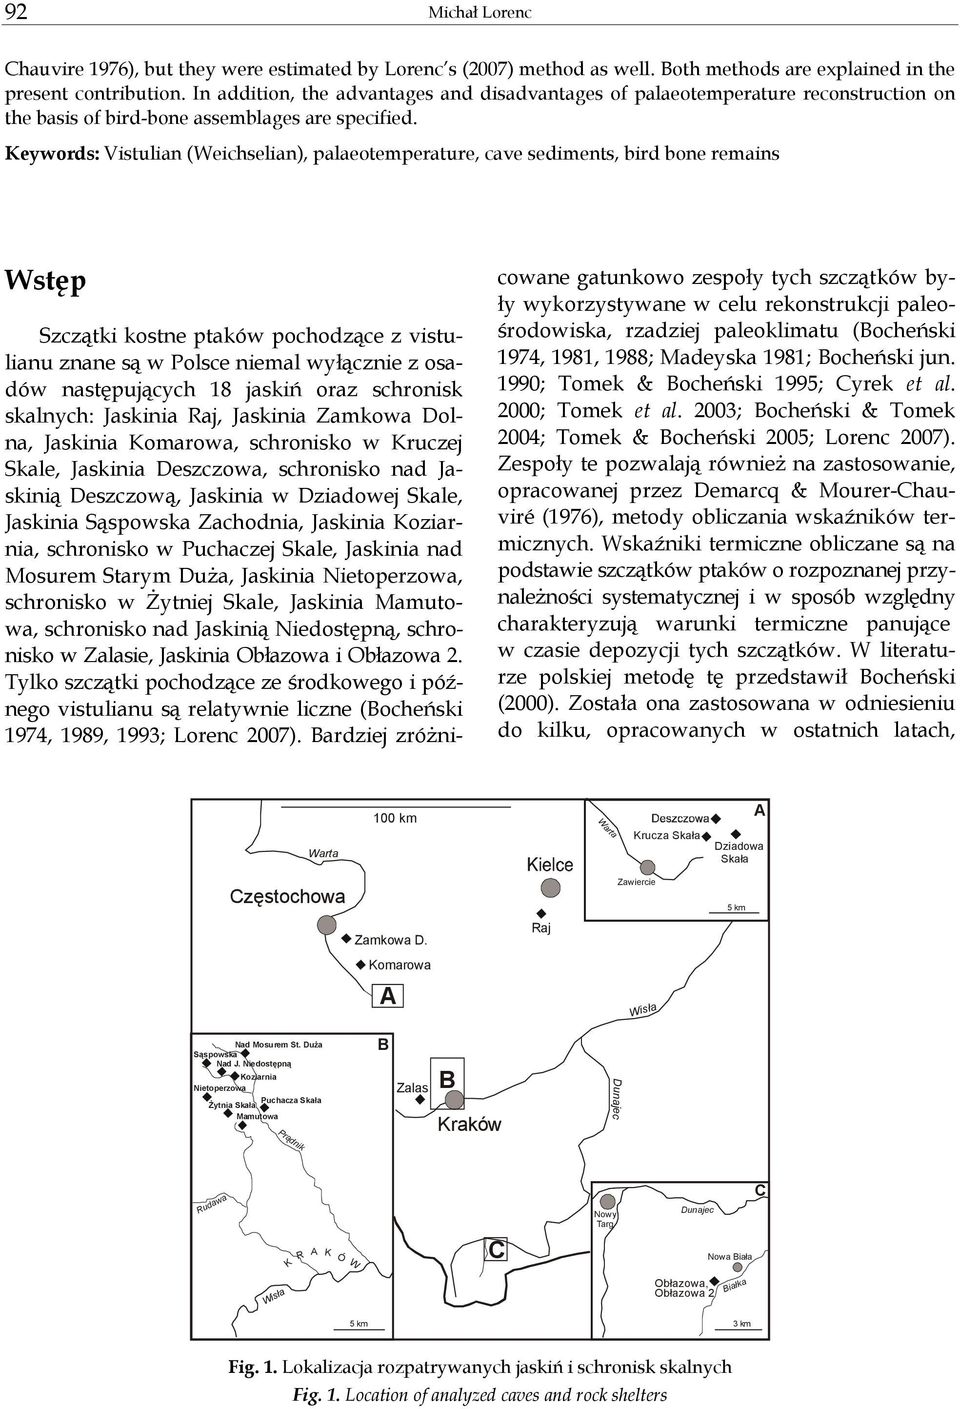 Keywords: Vistulian (Weichselian), palaeotemperature, cave sediments, bird bone remains Wstęp Szczątki kostne ptaków pochodzące z vistulianu znane są w Polsce niemal wyłącznie z osadów następujących